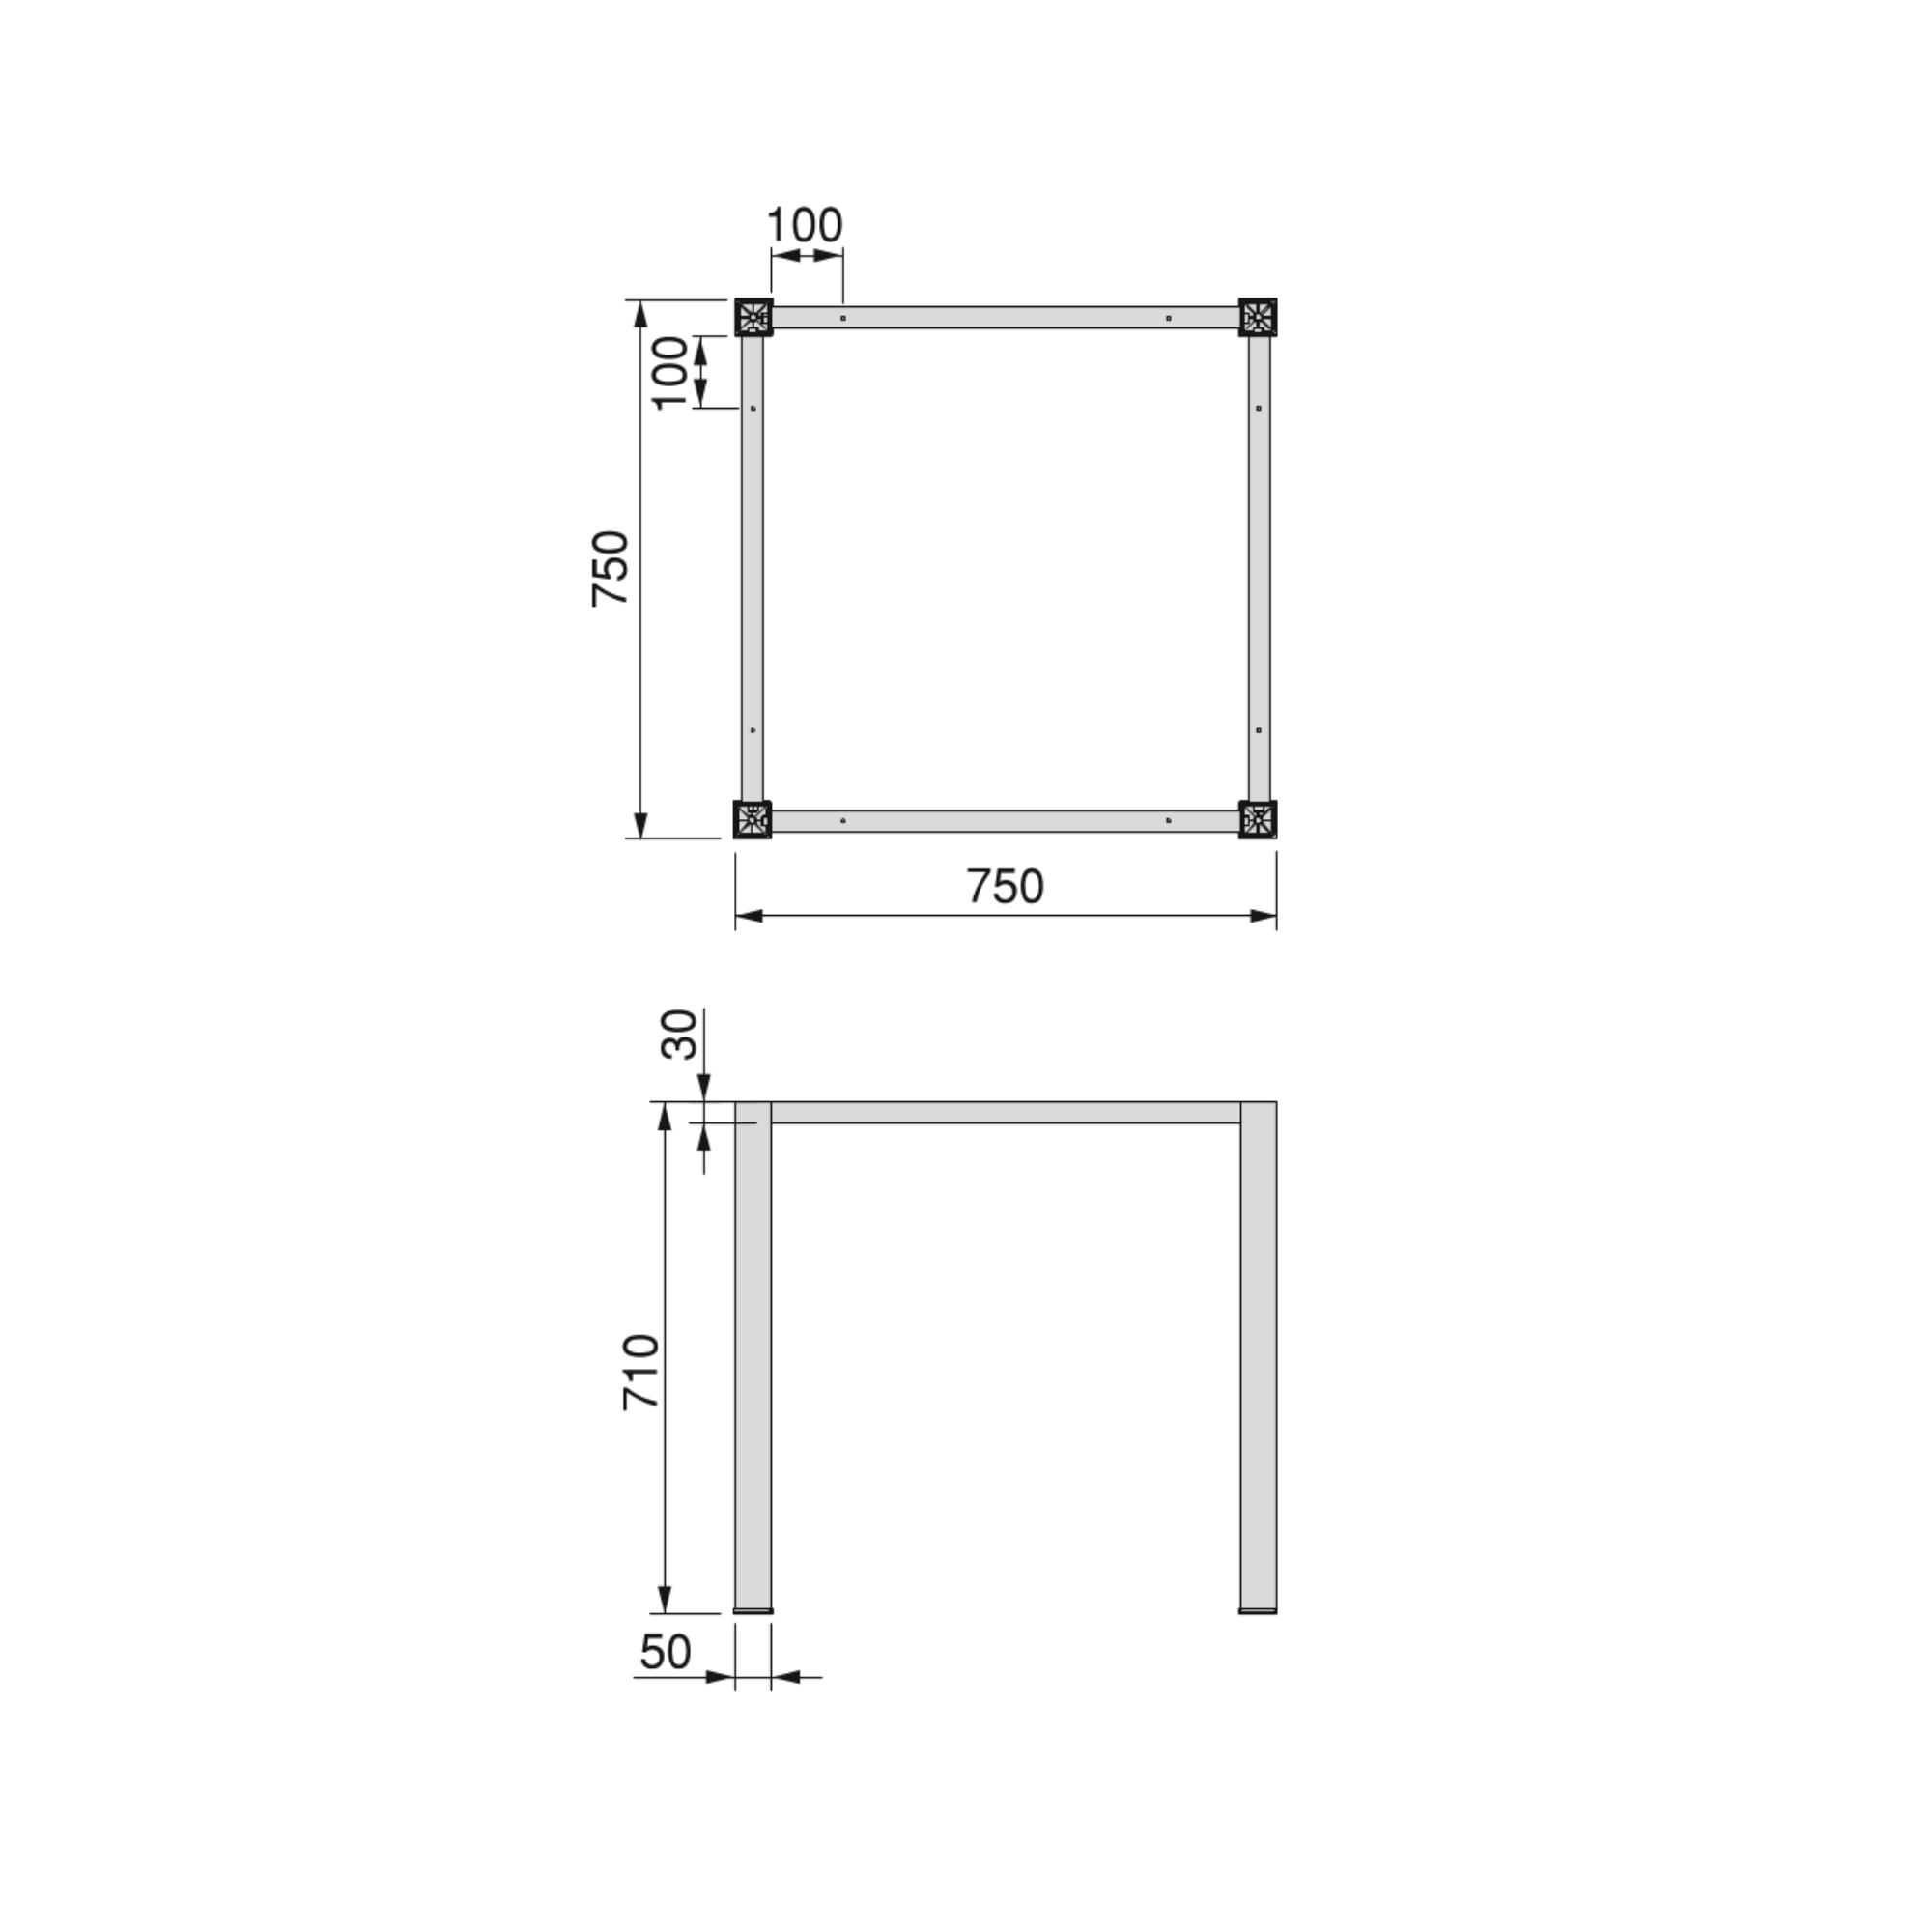 Estructura de mesa 80 cm, estructura de acero inoxidable, 1460 x 710 mm :  : Hogar y cocina